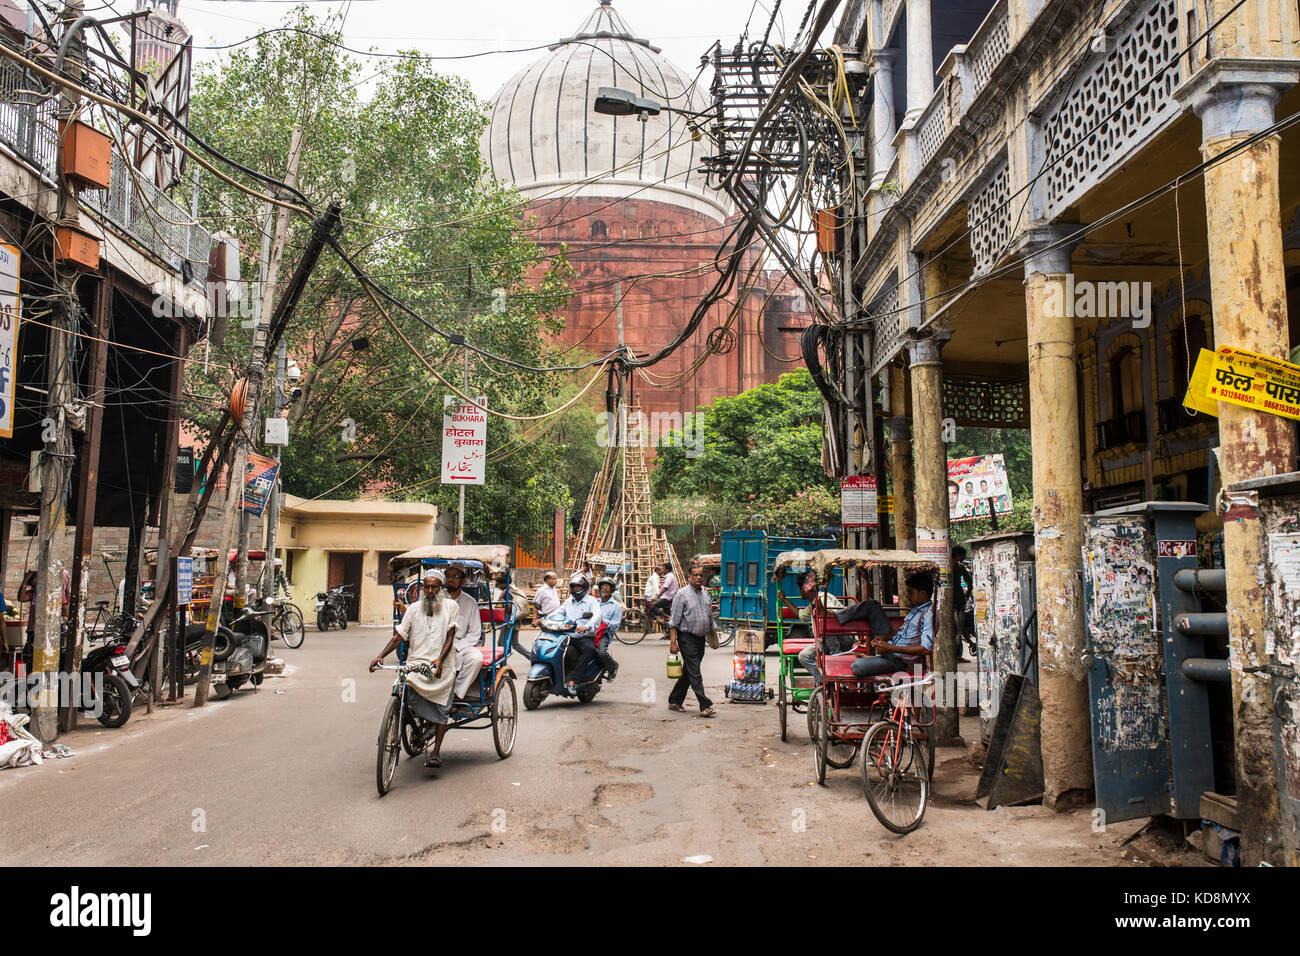 Chawri bazar Road in der Nähe von Jama Masjid Moschee im Hintergrund, Delhi, Indien Stockfoto